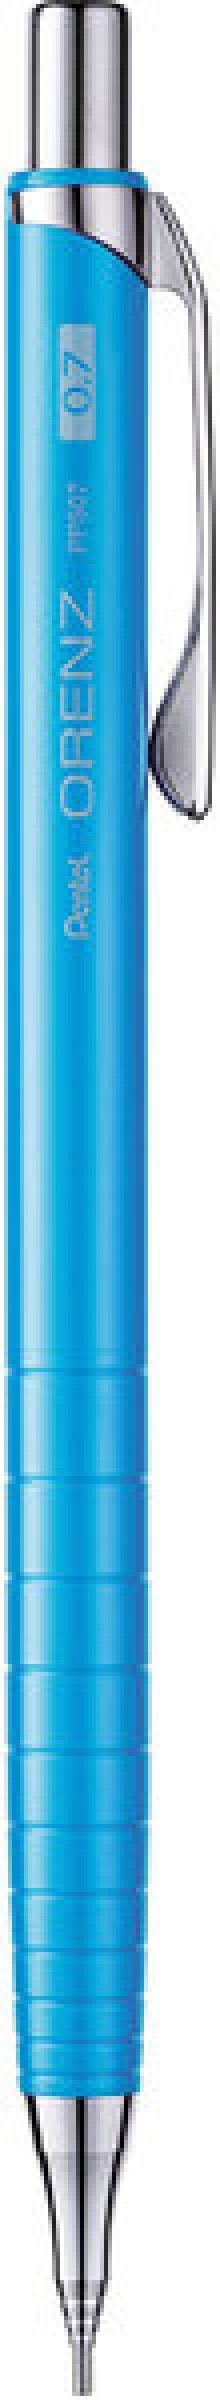 Druckbleistift Orenz hellblau Strichstärke 0,7 mm/B